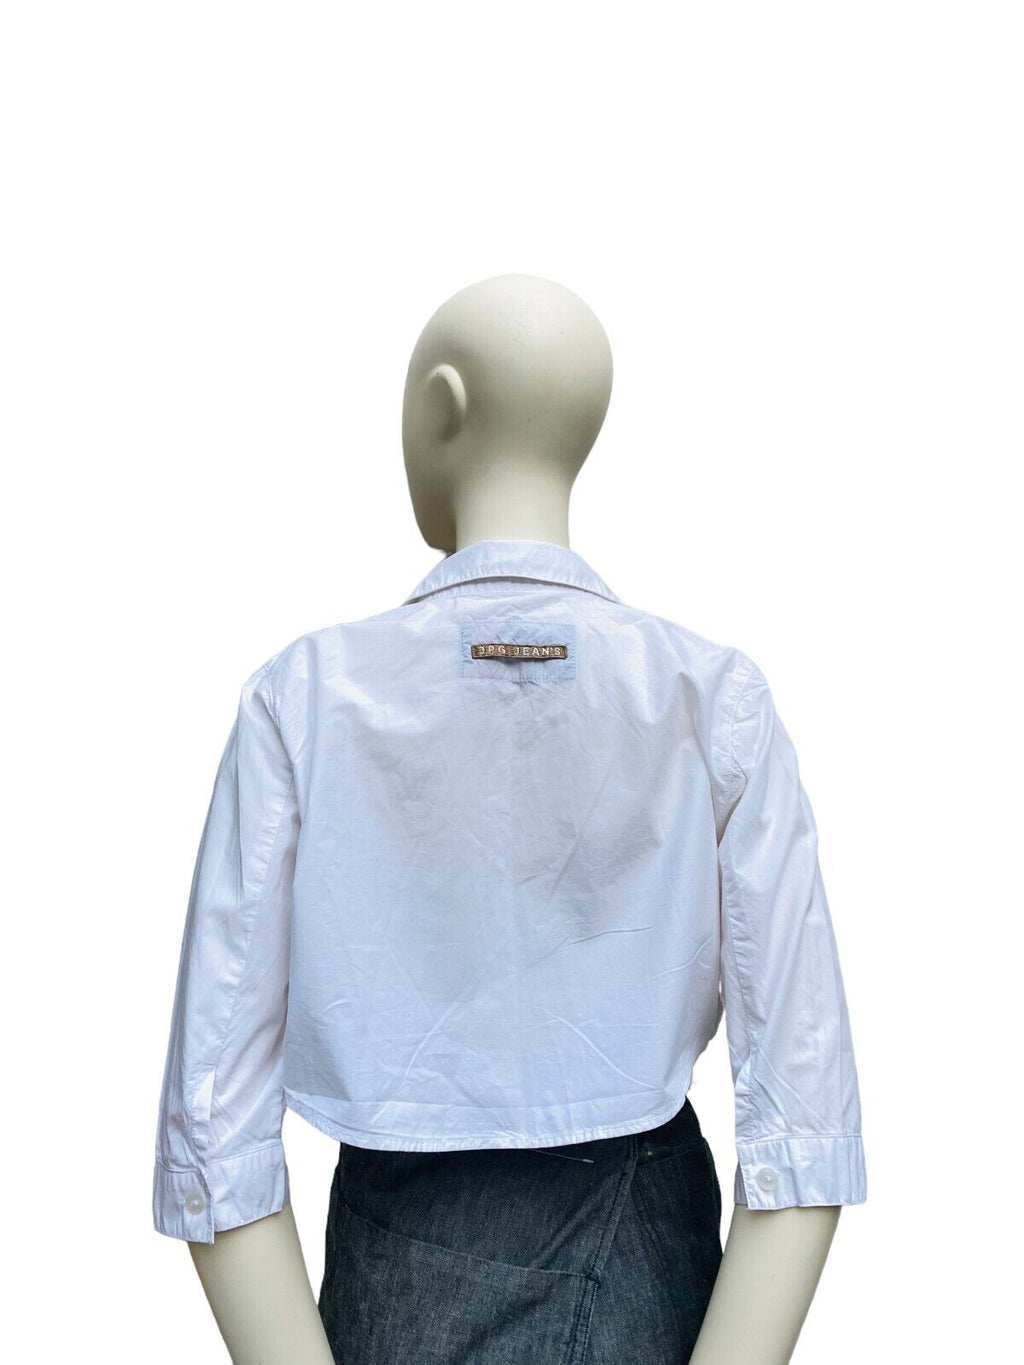 Vintage Cropped white shirt Size IT 46 EU 42 fits M